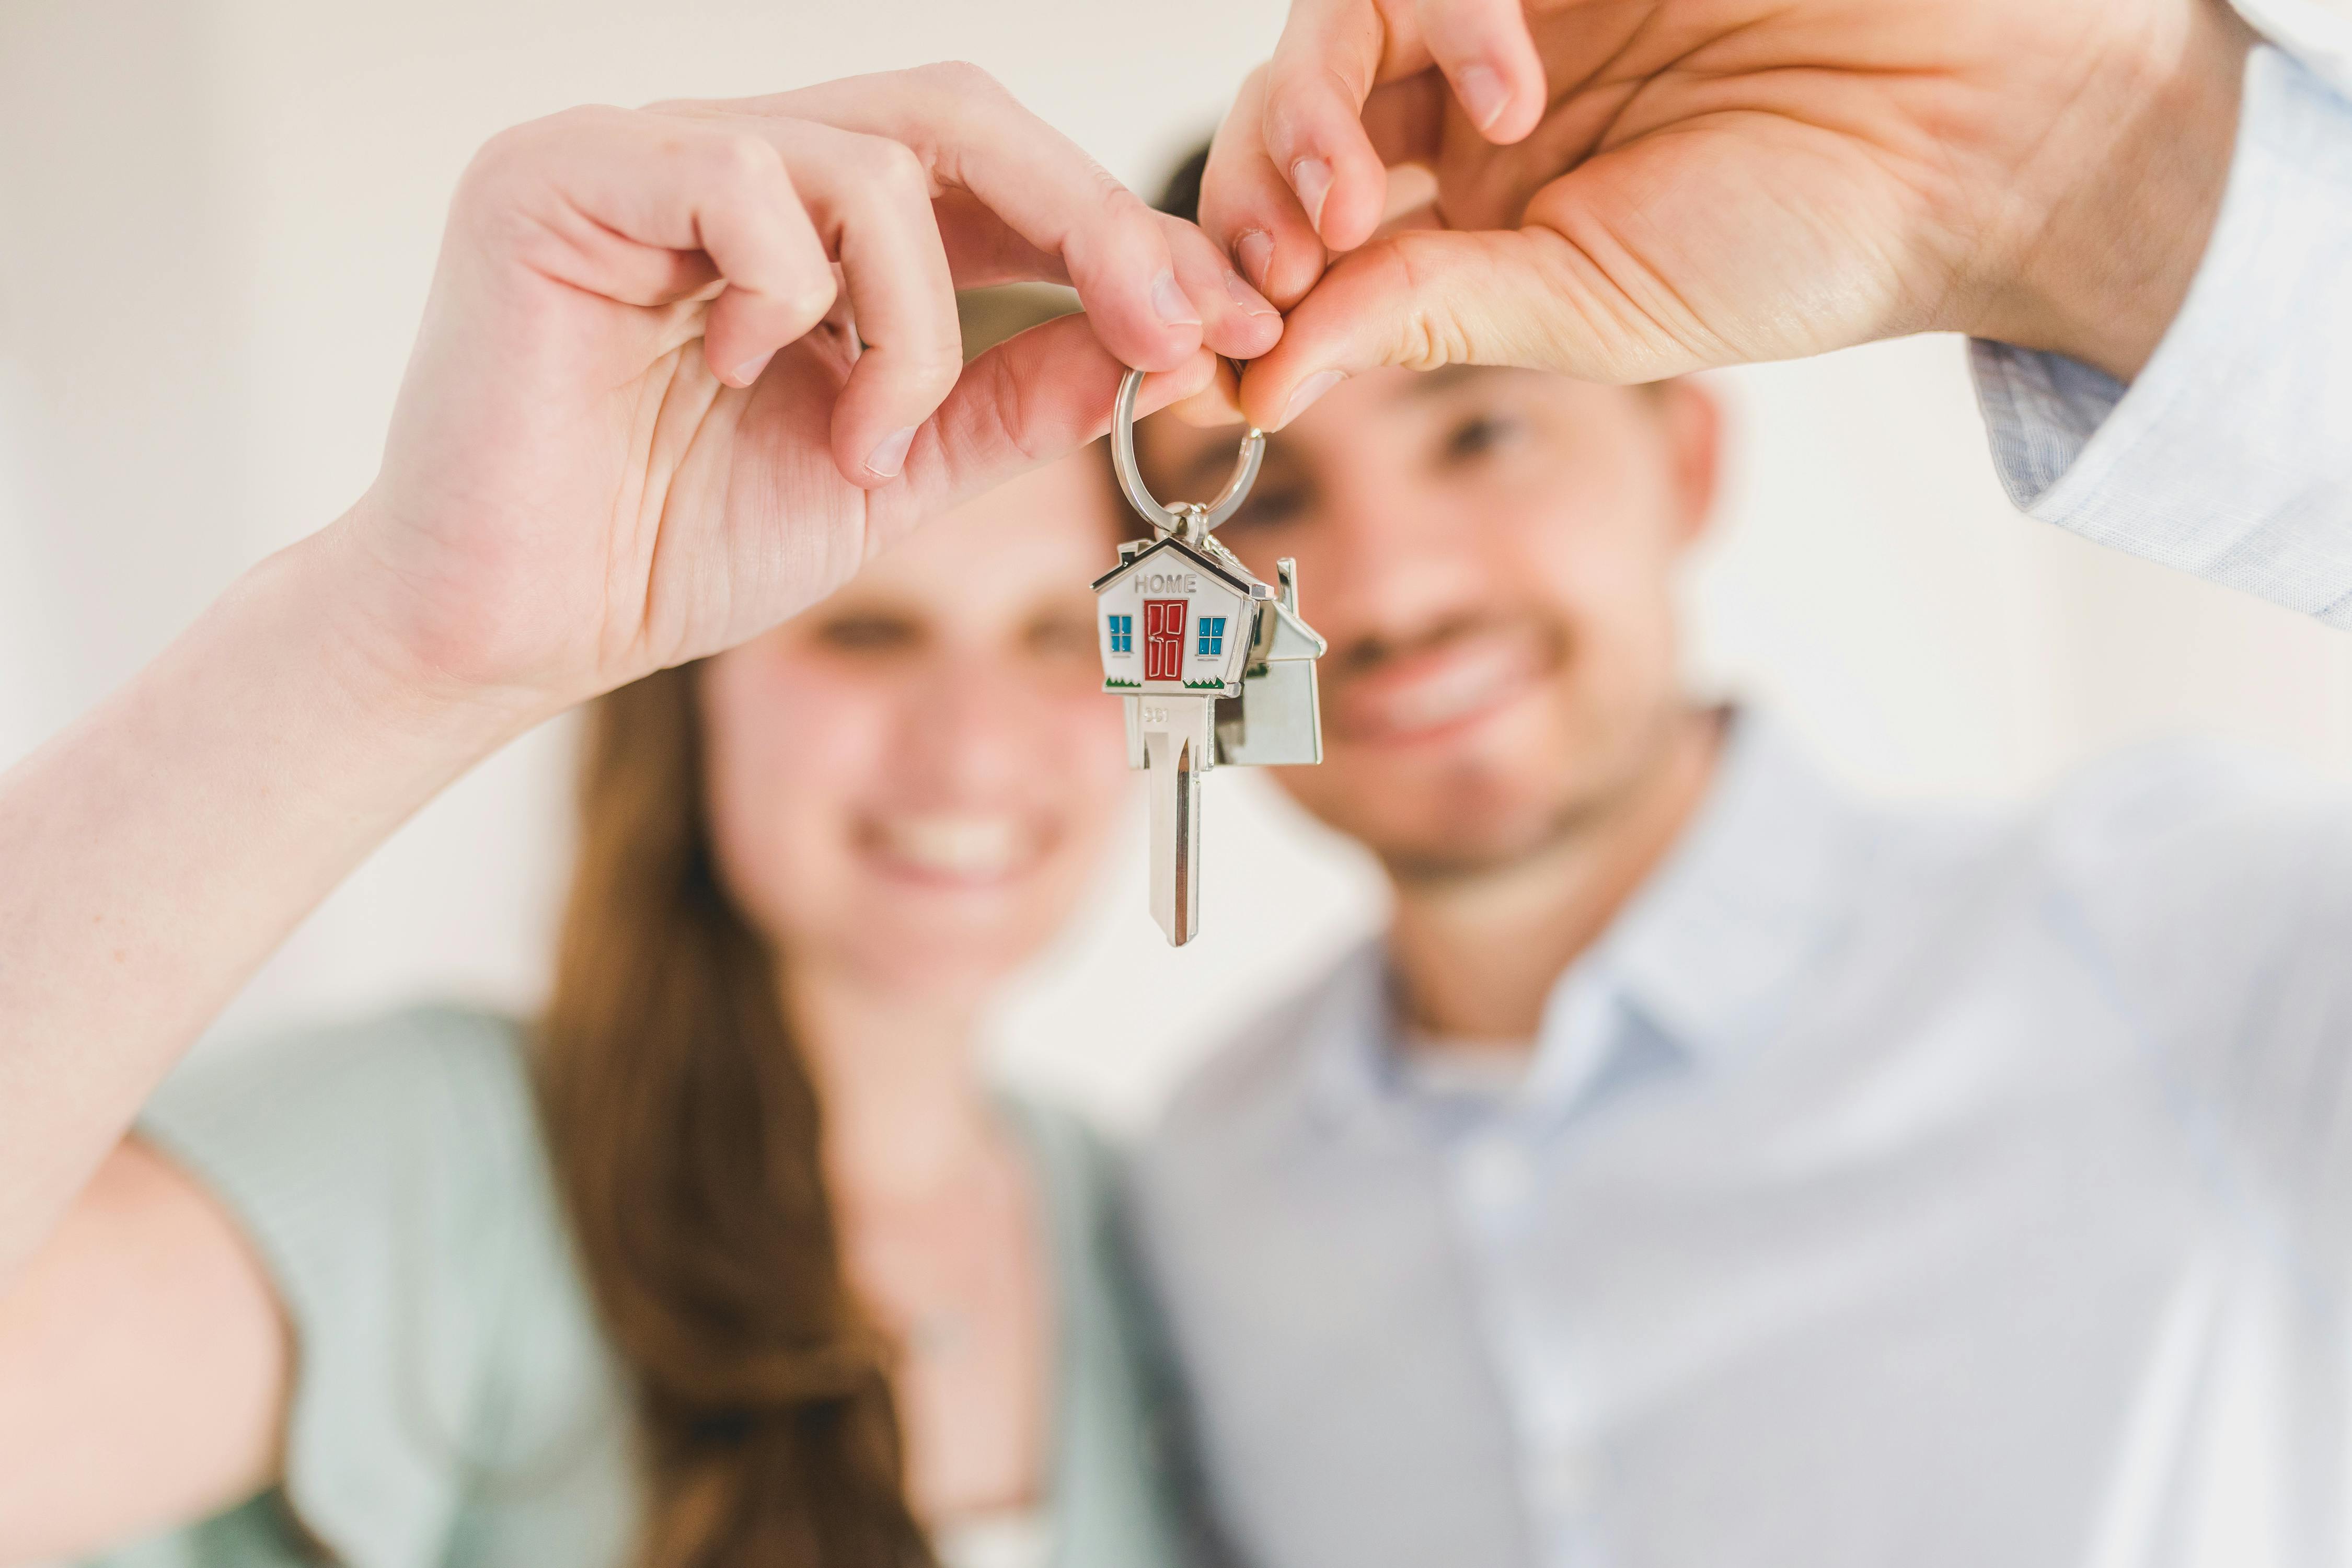 Un jeune couple brandit un jeu de clés de maison | Source : RDNE Stock project on Pexels